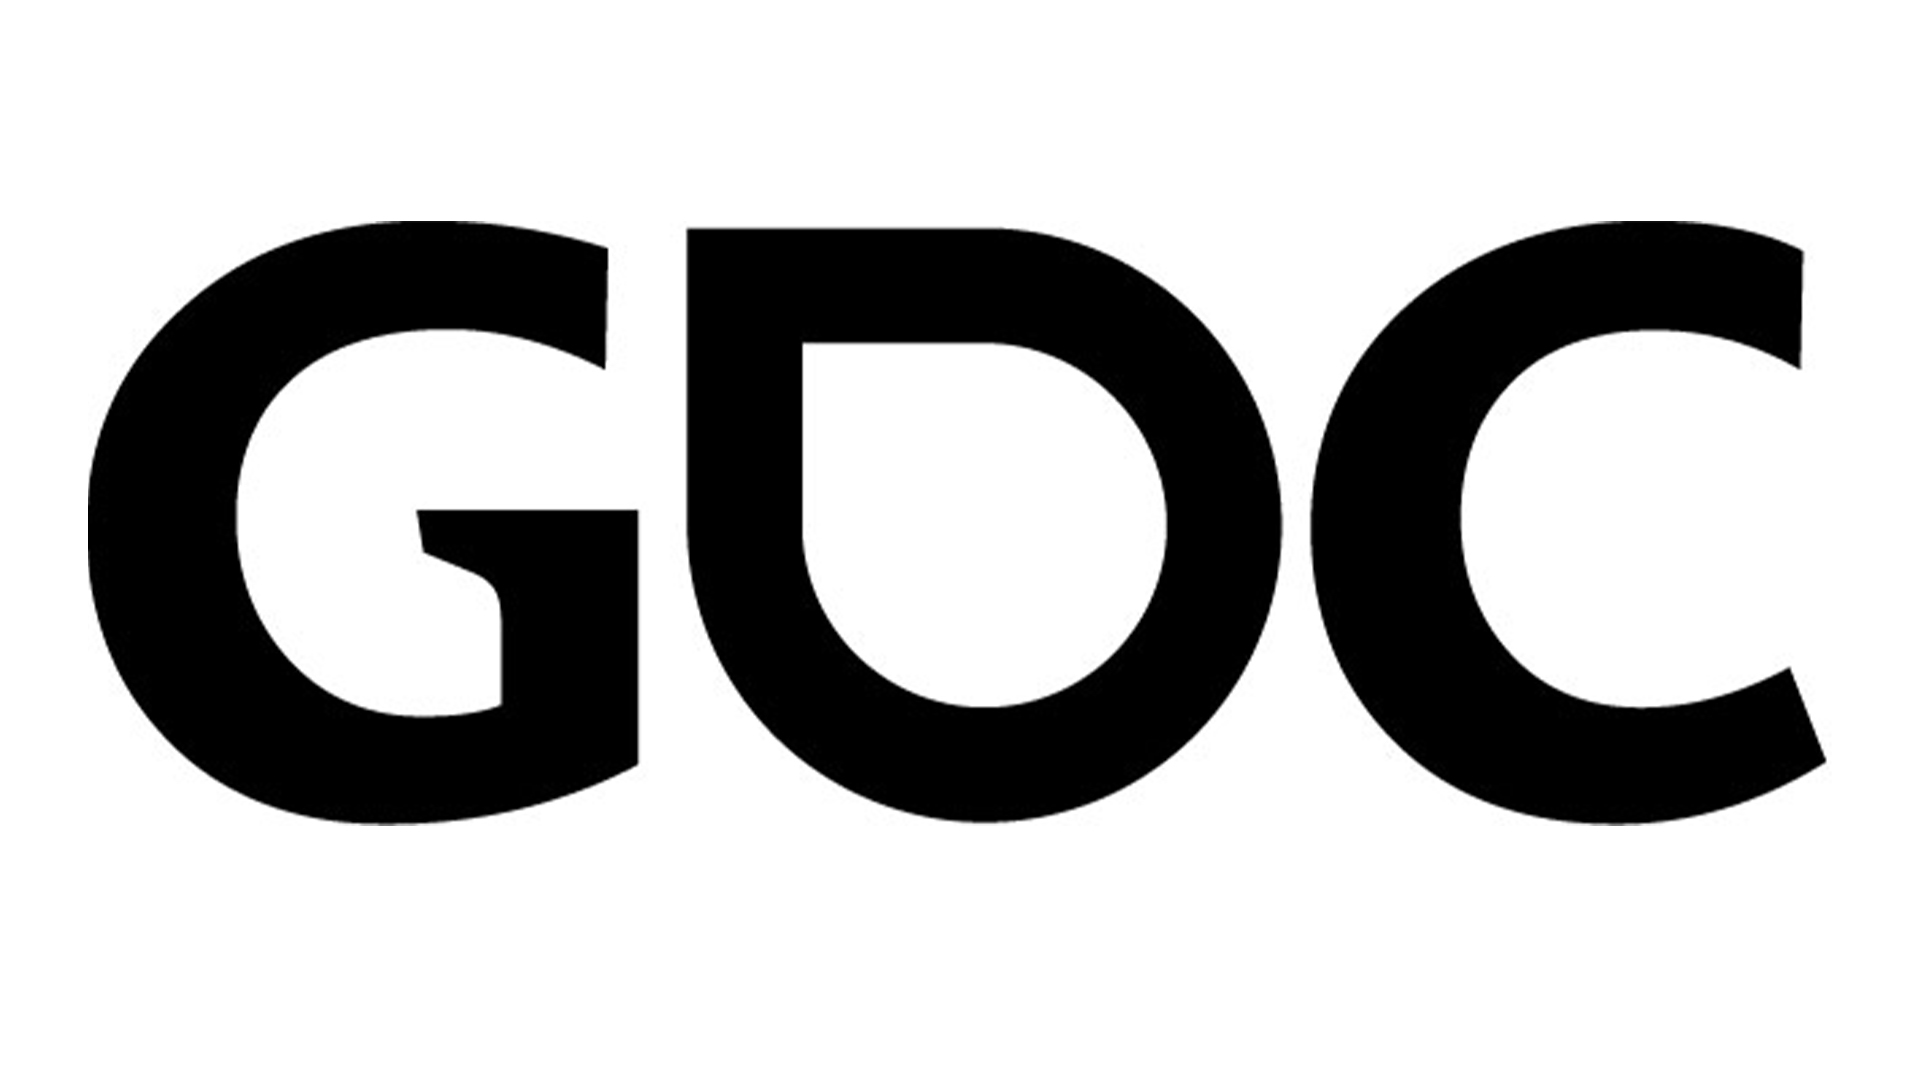 GDC secara resmi ditunda hingga musim panas